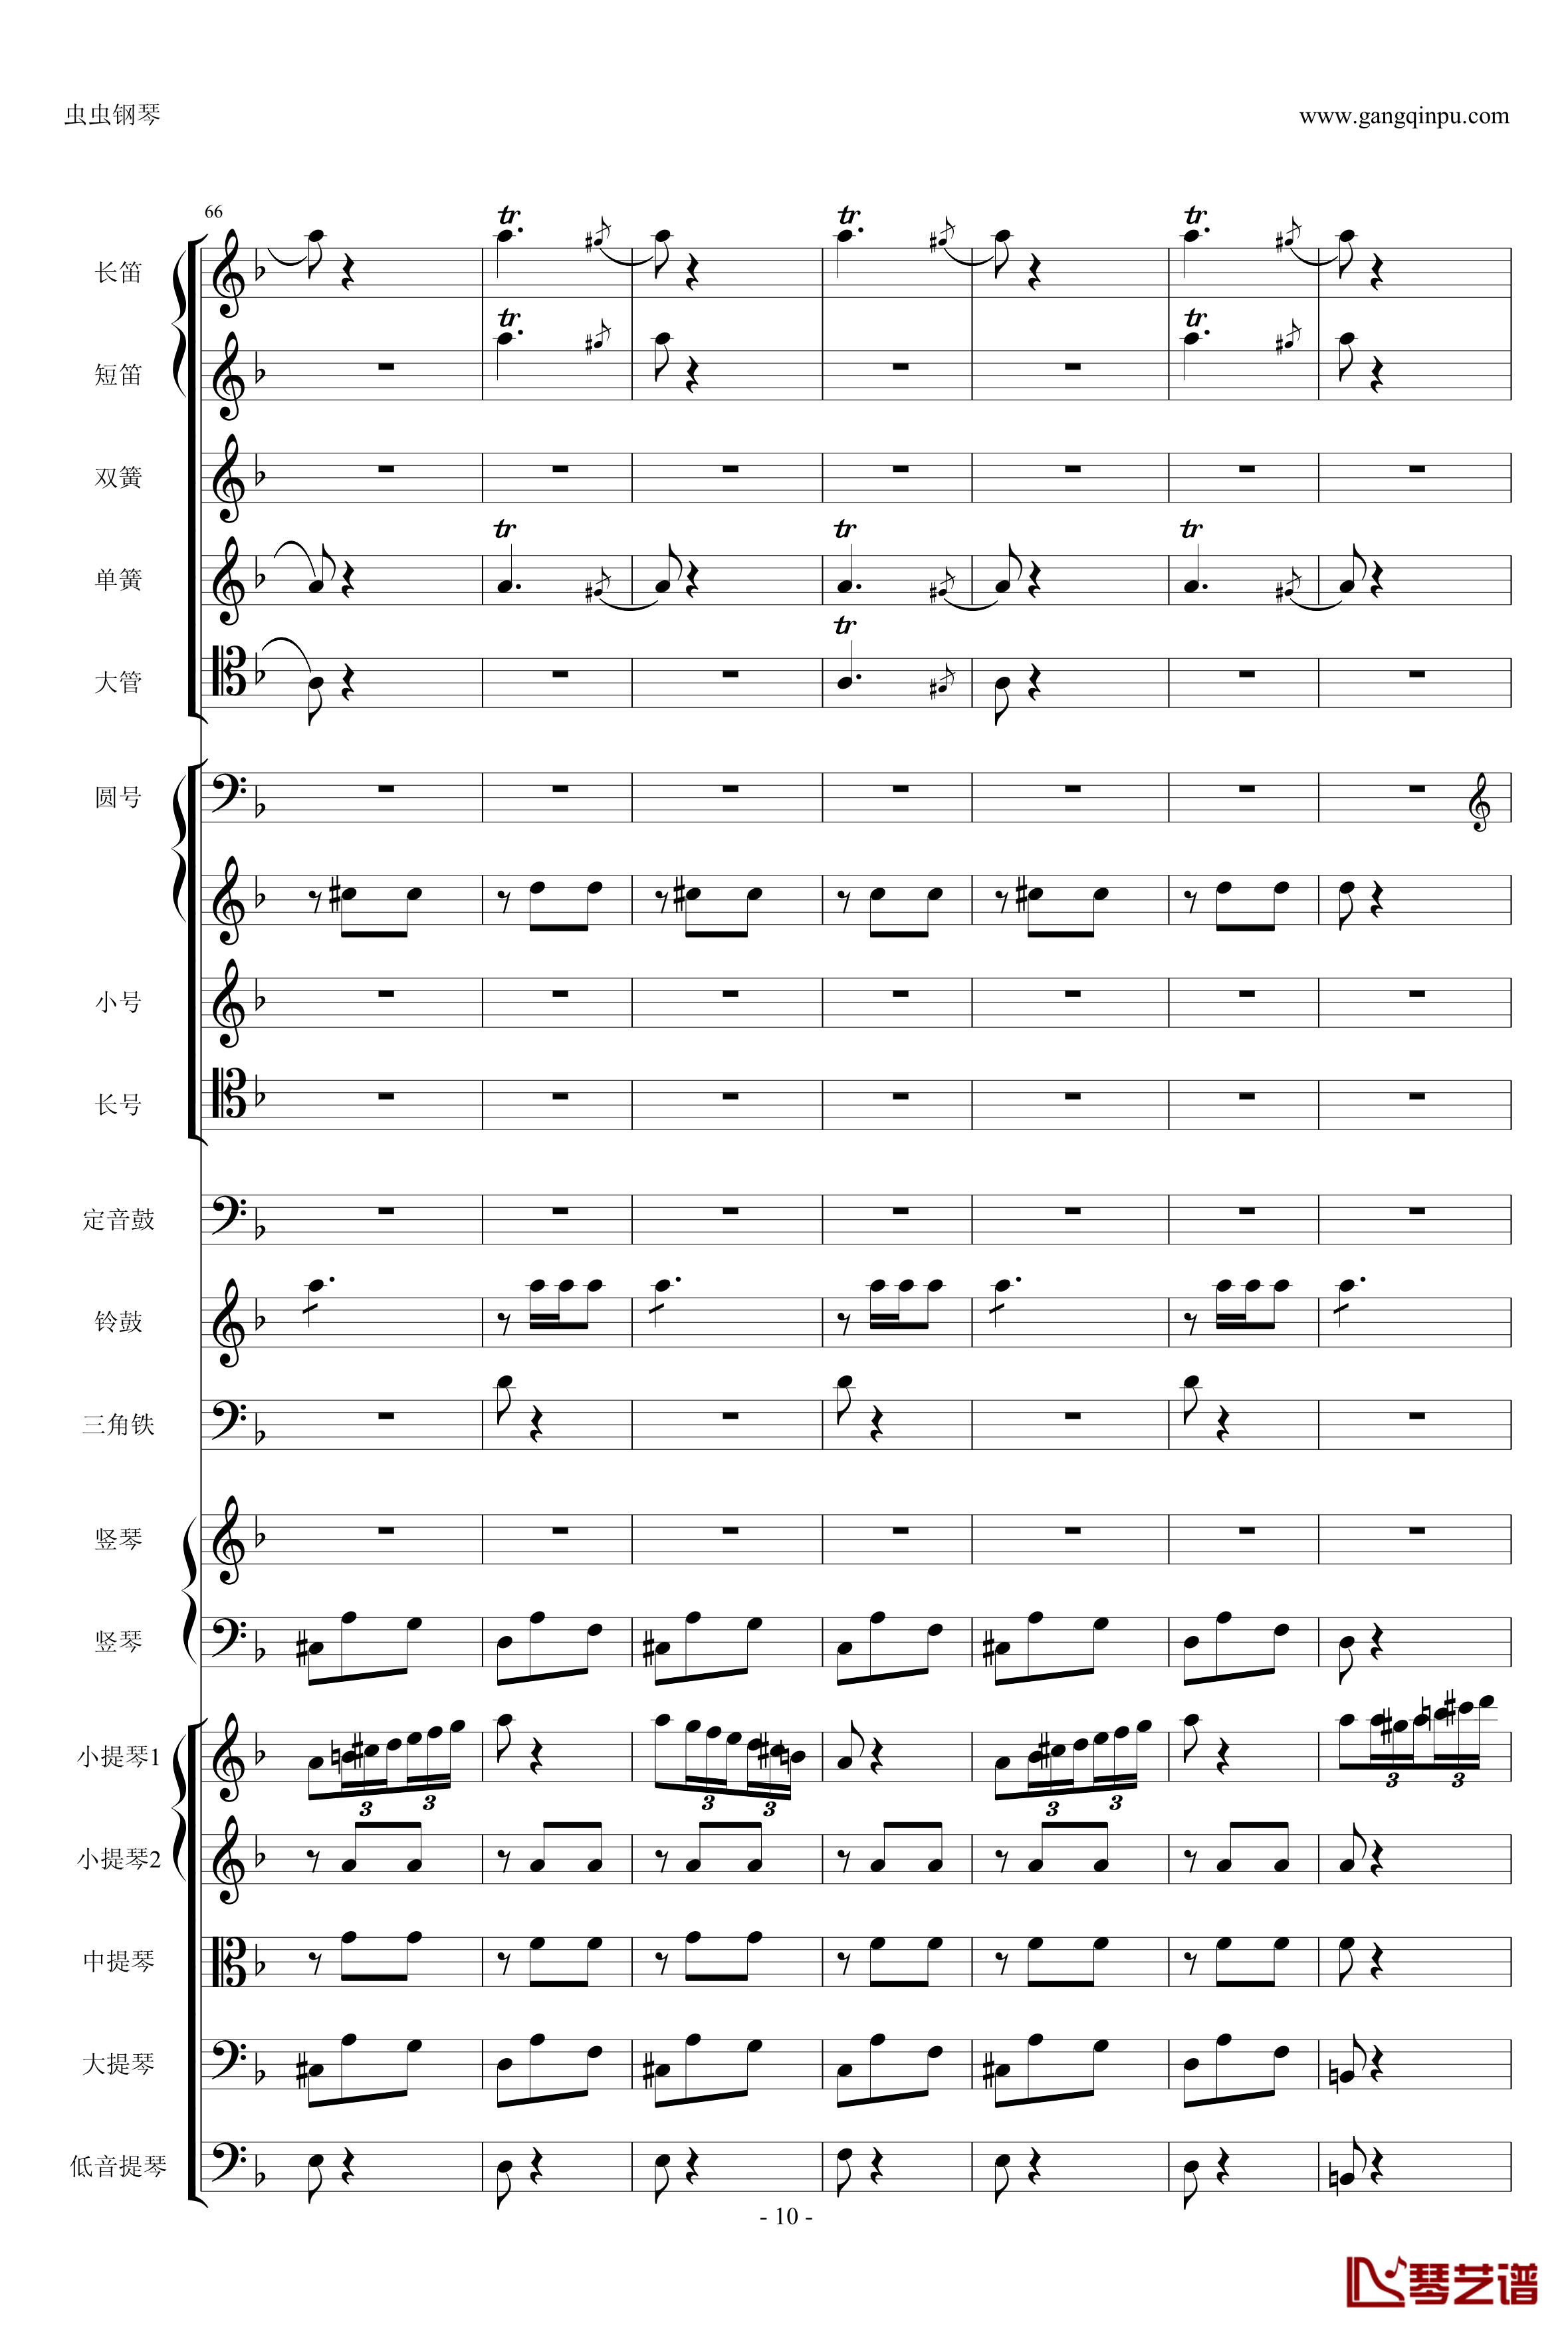 歌剧卡门选段钢琴谱-比才-Bizet- 第四幕间奏曲10